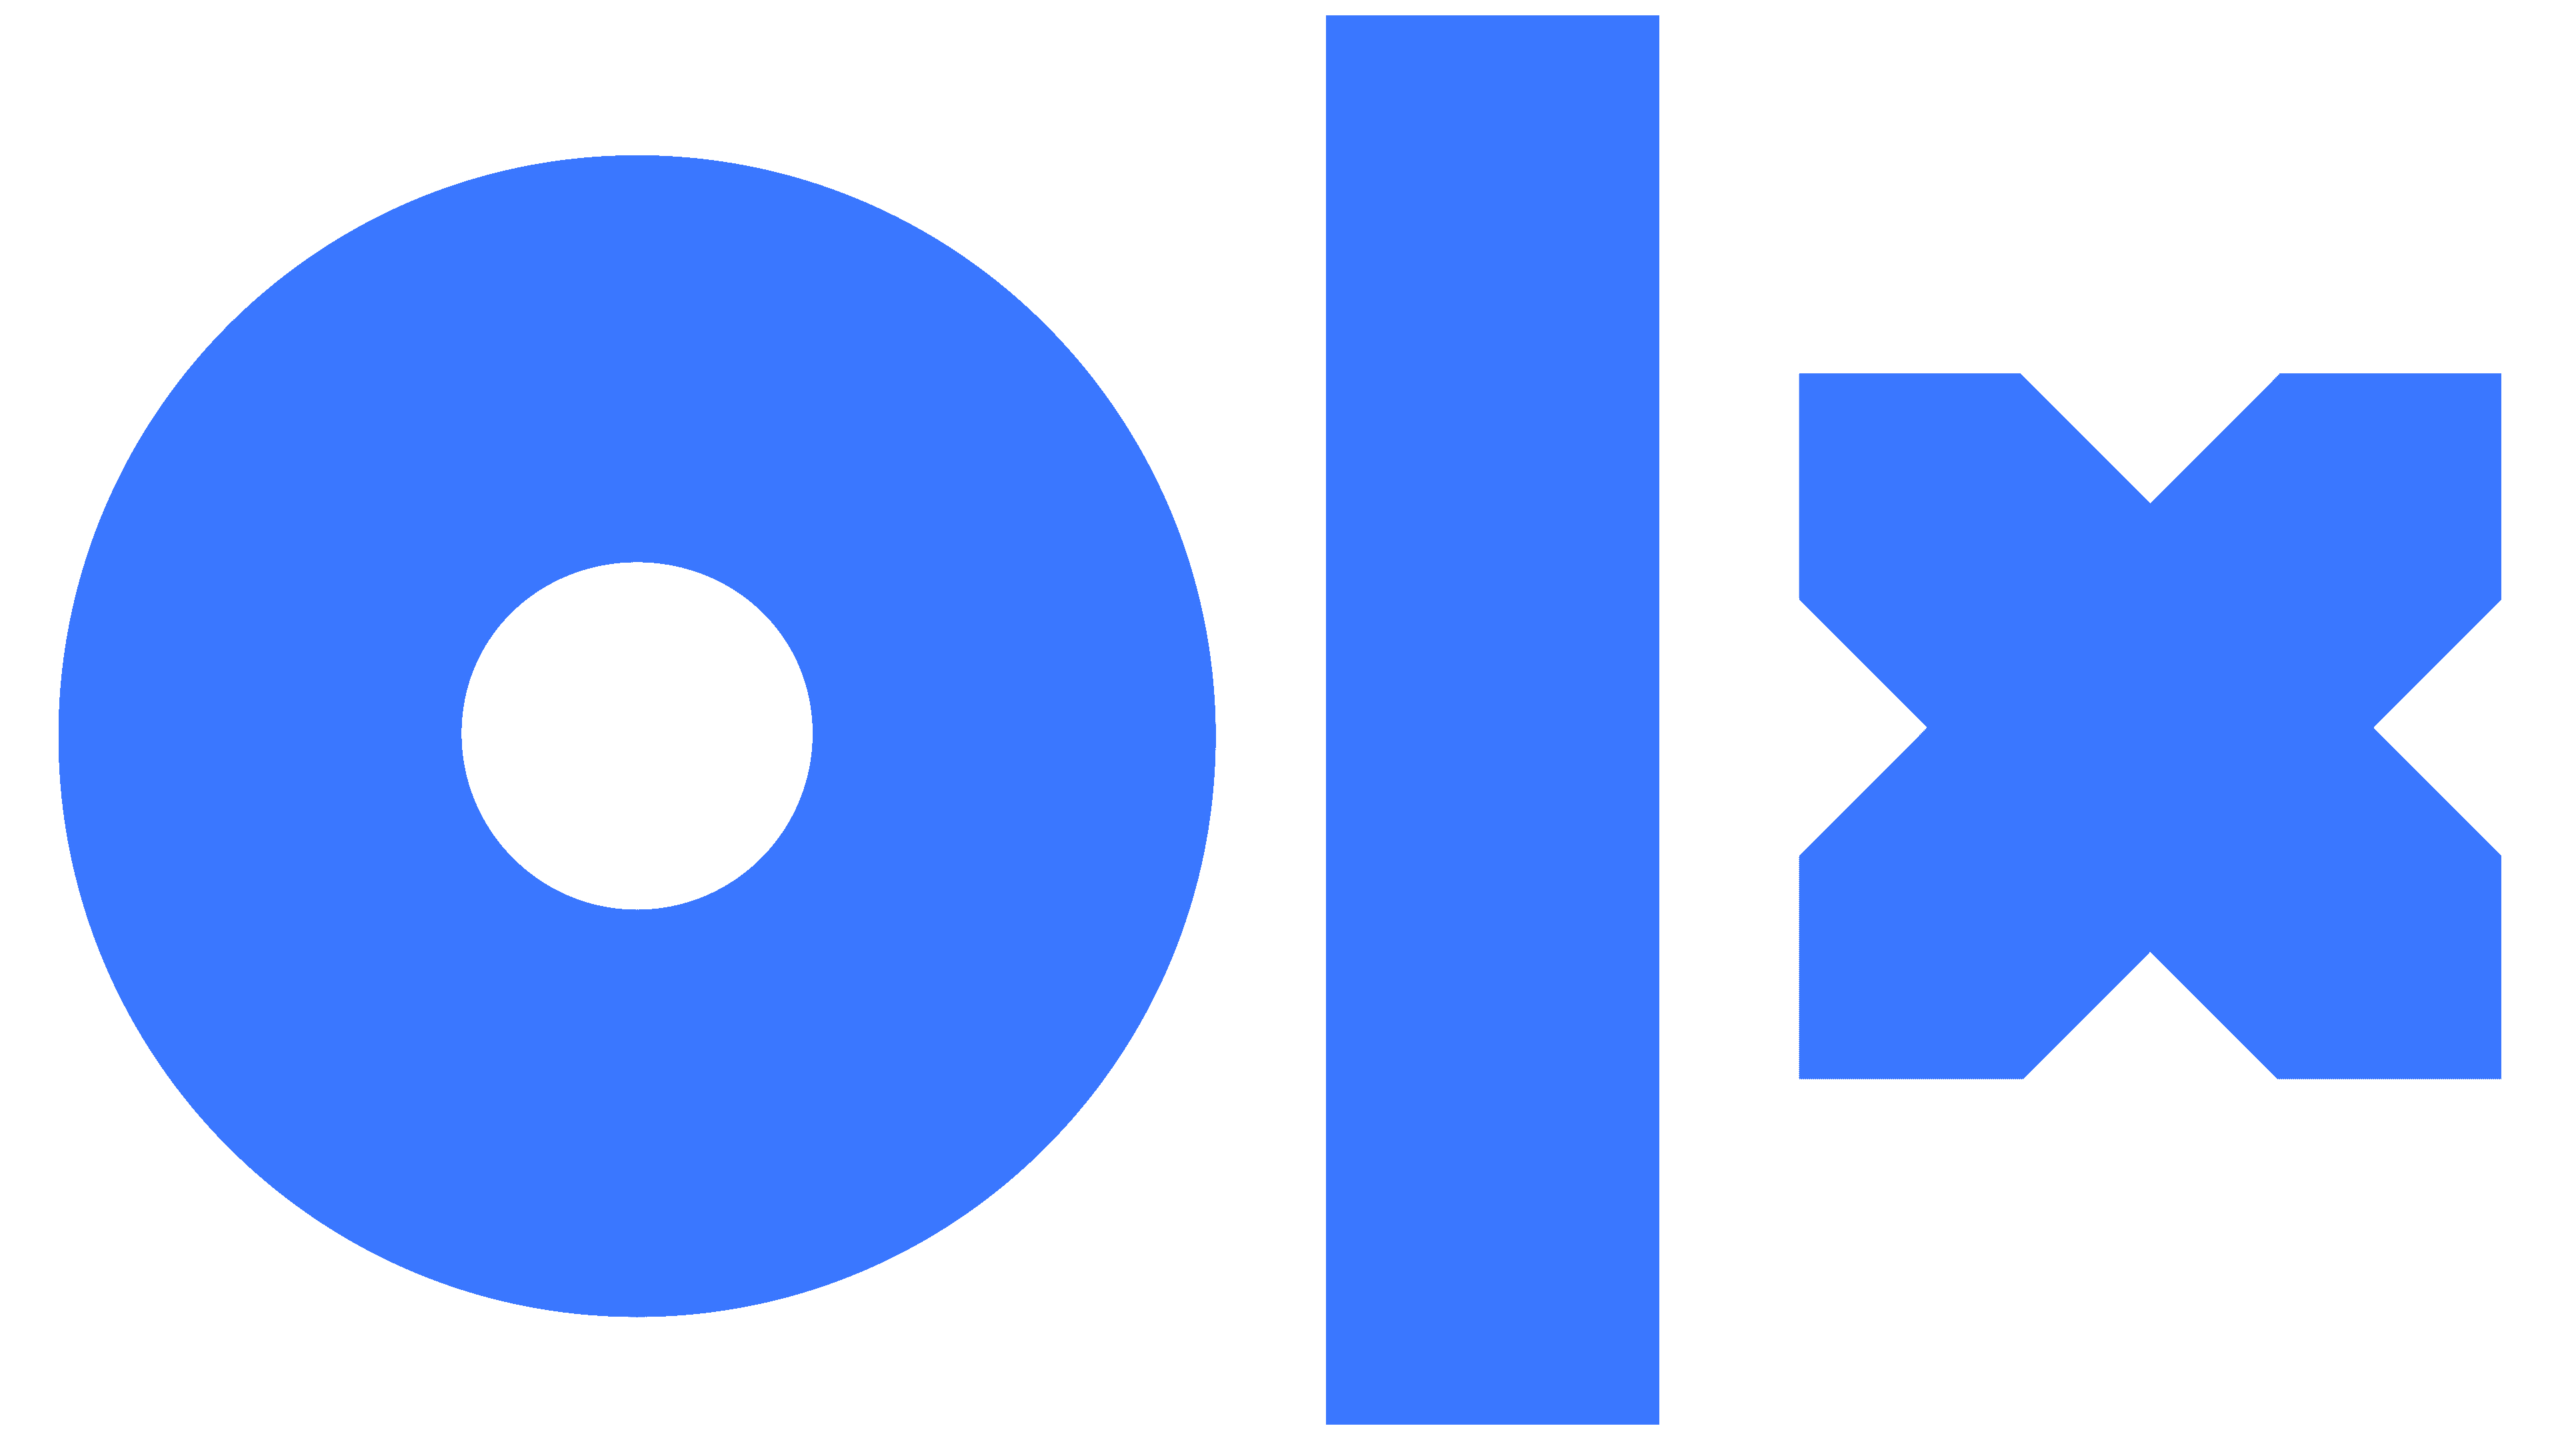 Logo OLX